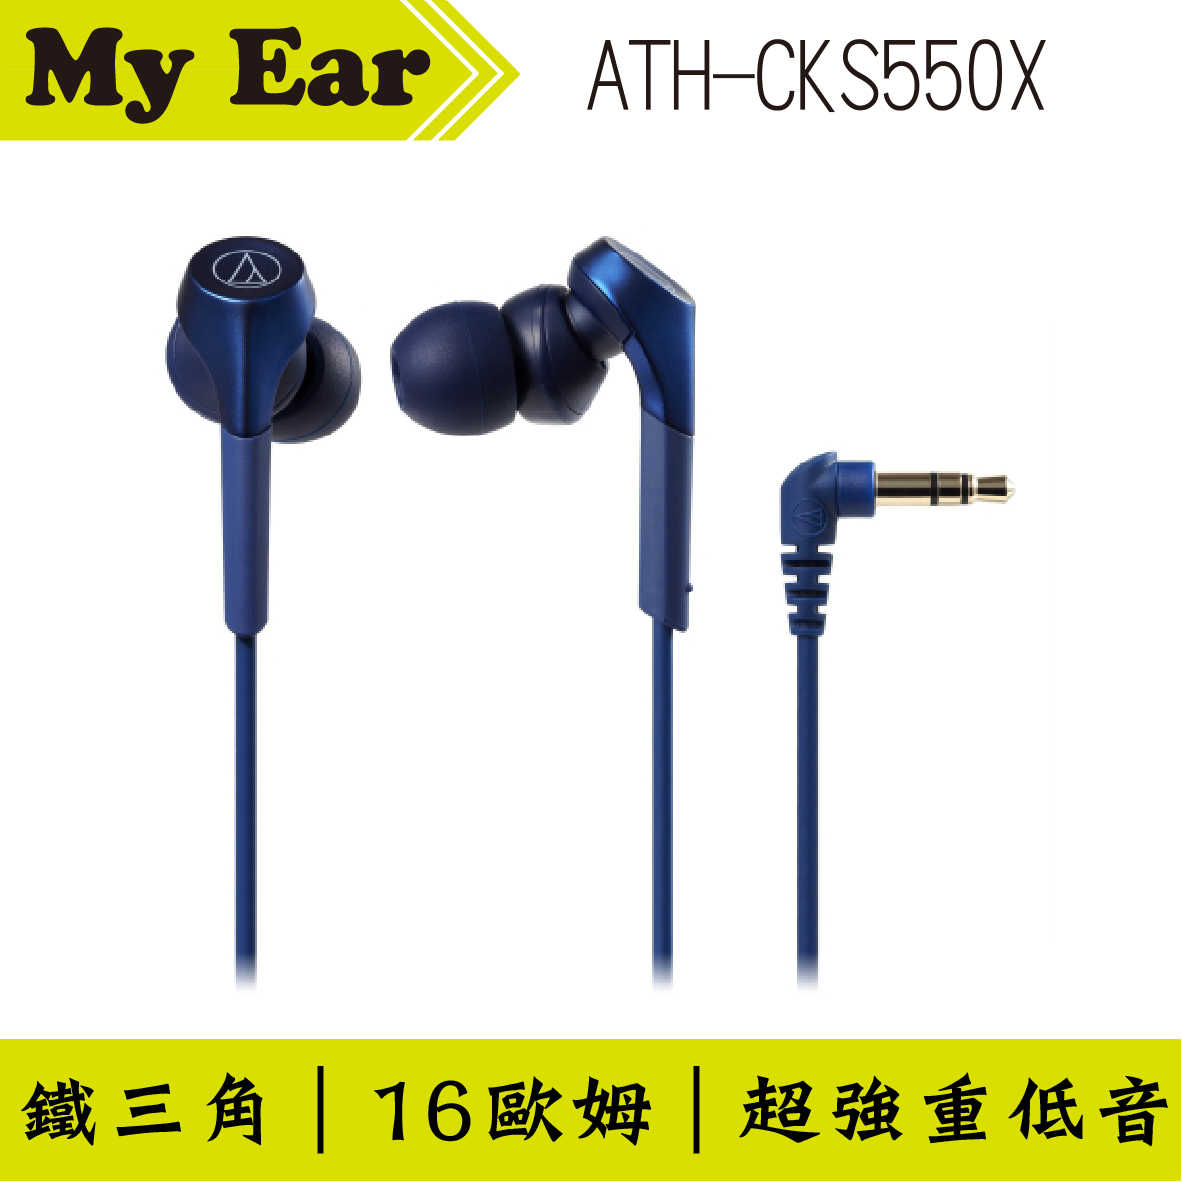 鐵三角 ATH-CKS550X 金色 重低音 耳道式耳機｜My Ear 耳機專門店